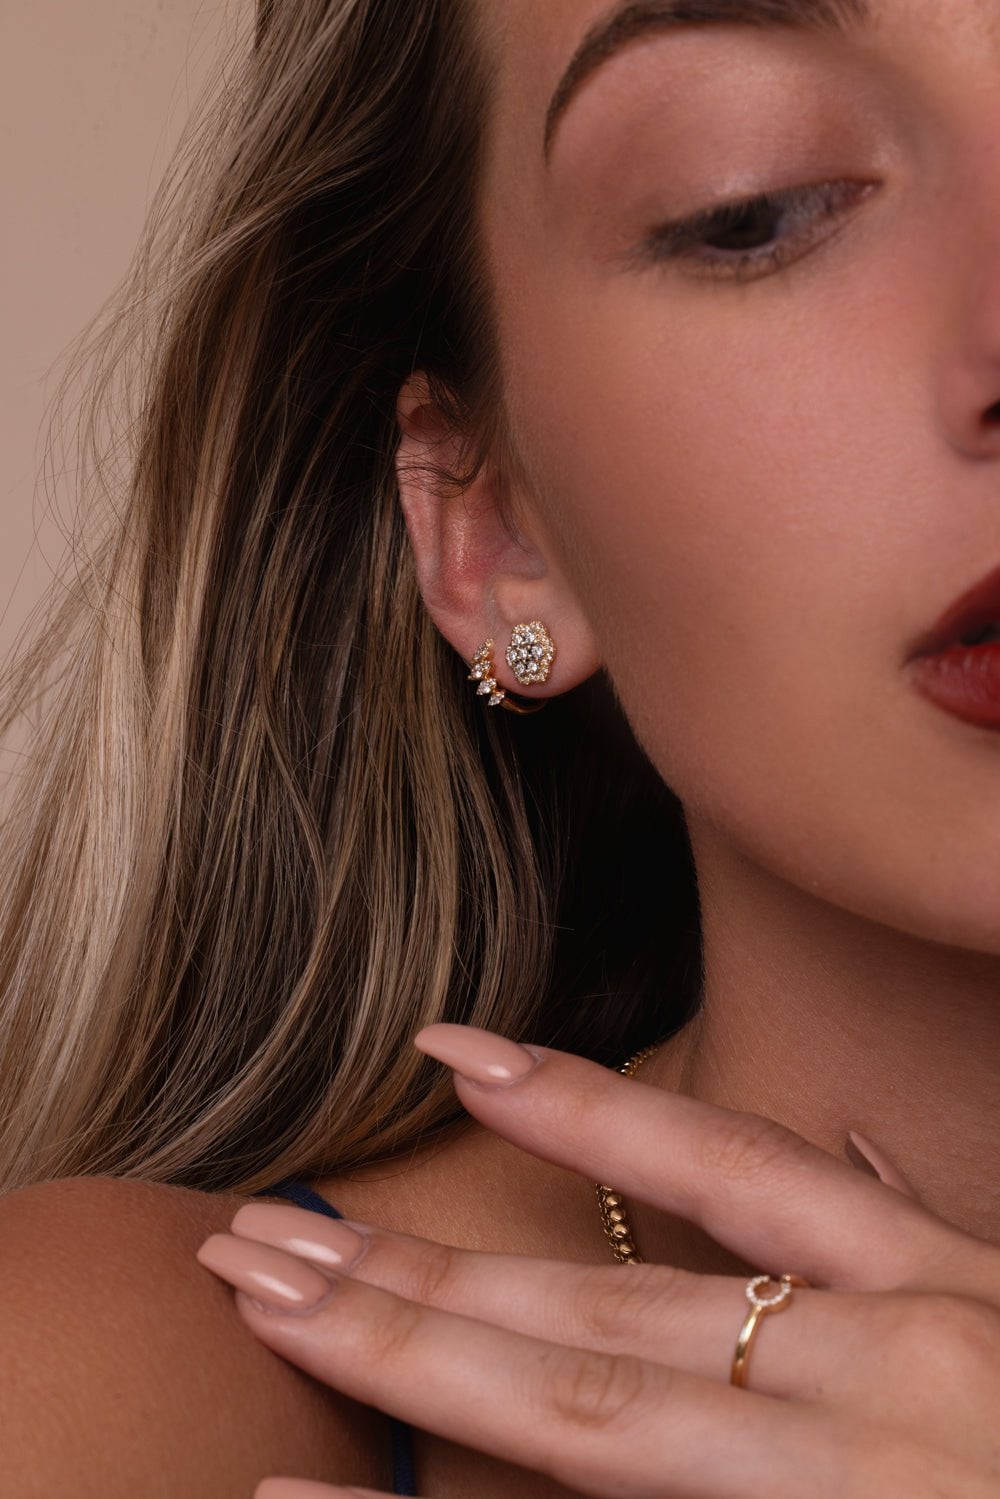 DANA REBECCA DESIGNS-Ava Bea Flower Stud Earrings - White Gold-YELLOW GOLD